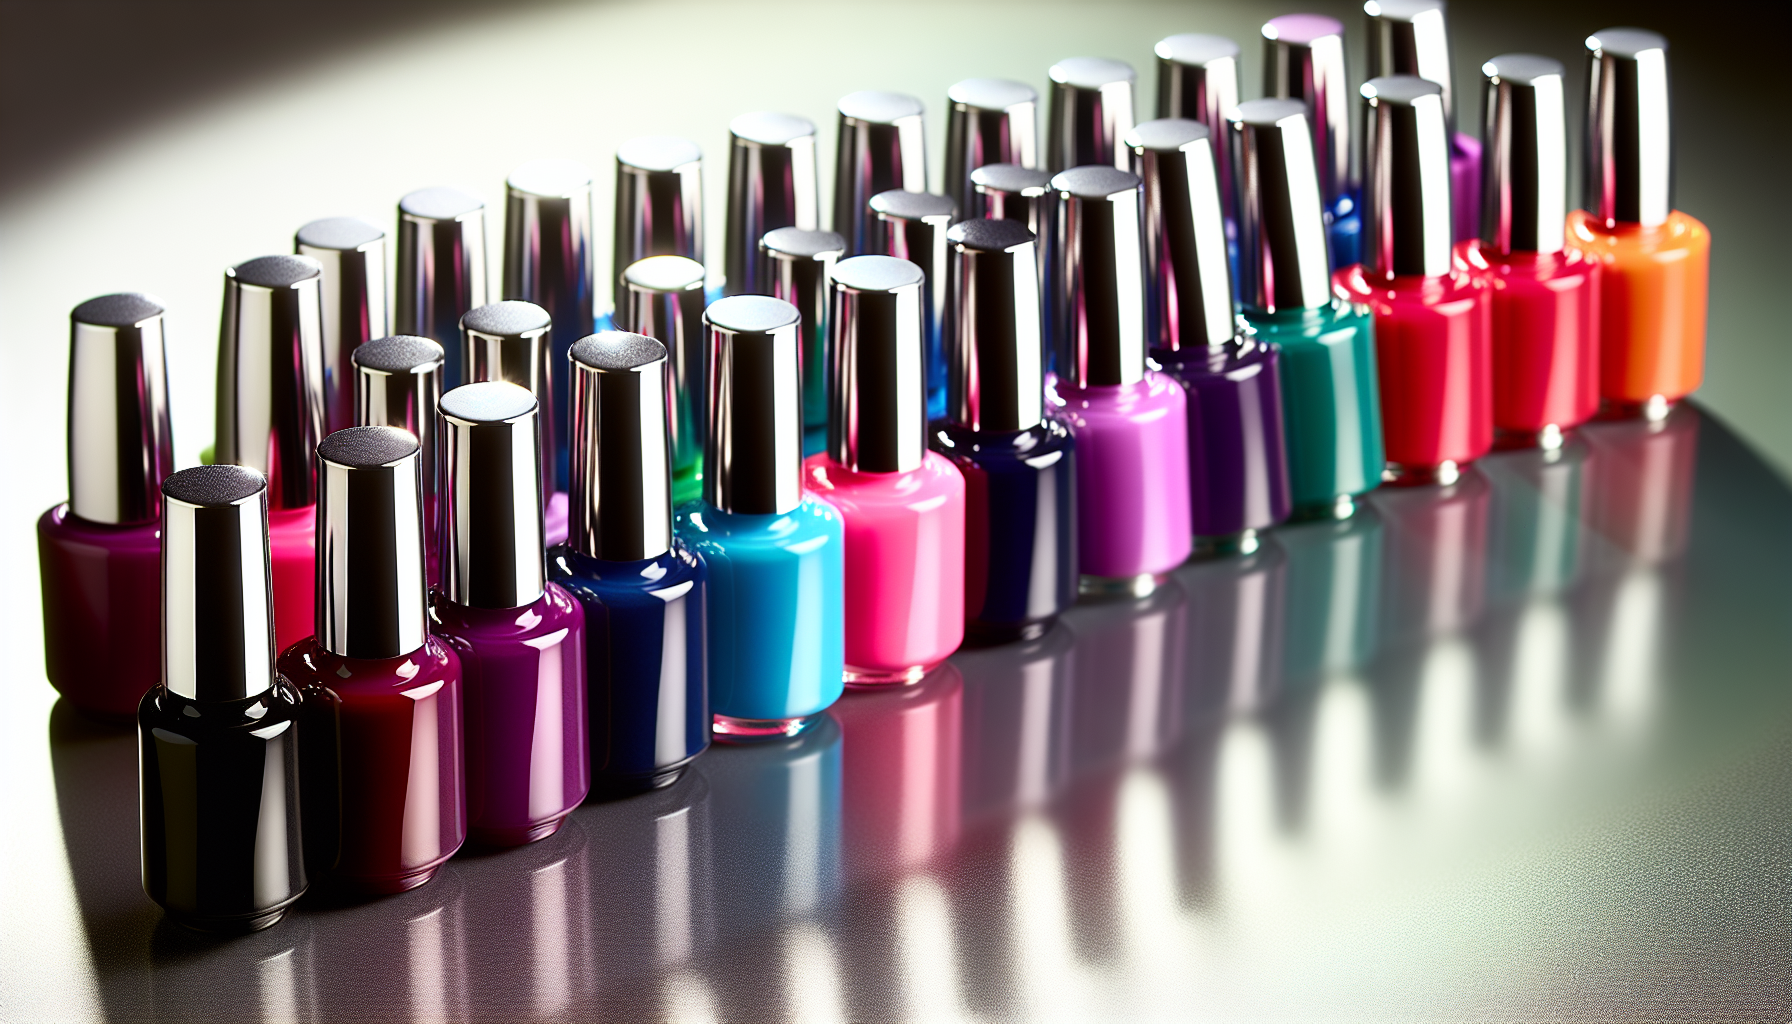 Bottles of various shellac nail polish colors